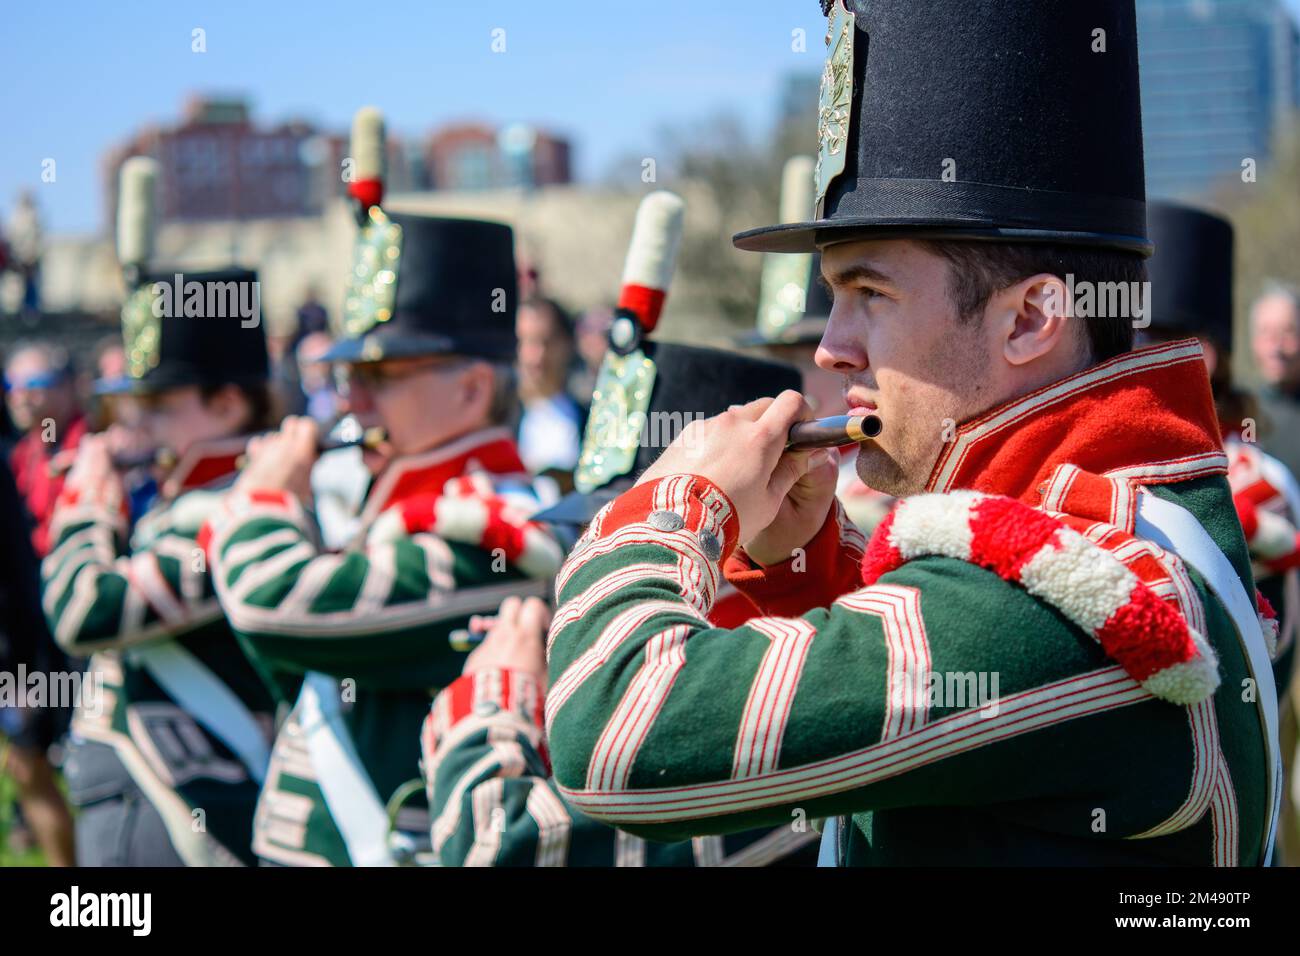 L'immagine è stata presa durante le celebrazioni per il 200th° anniversario della Battaglia di York a Toronto, Canada, nel 2013 Foto Stock